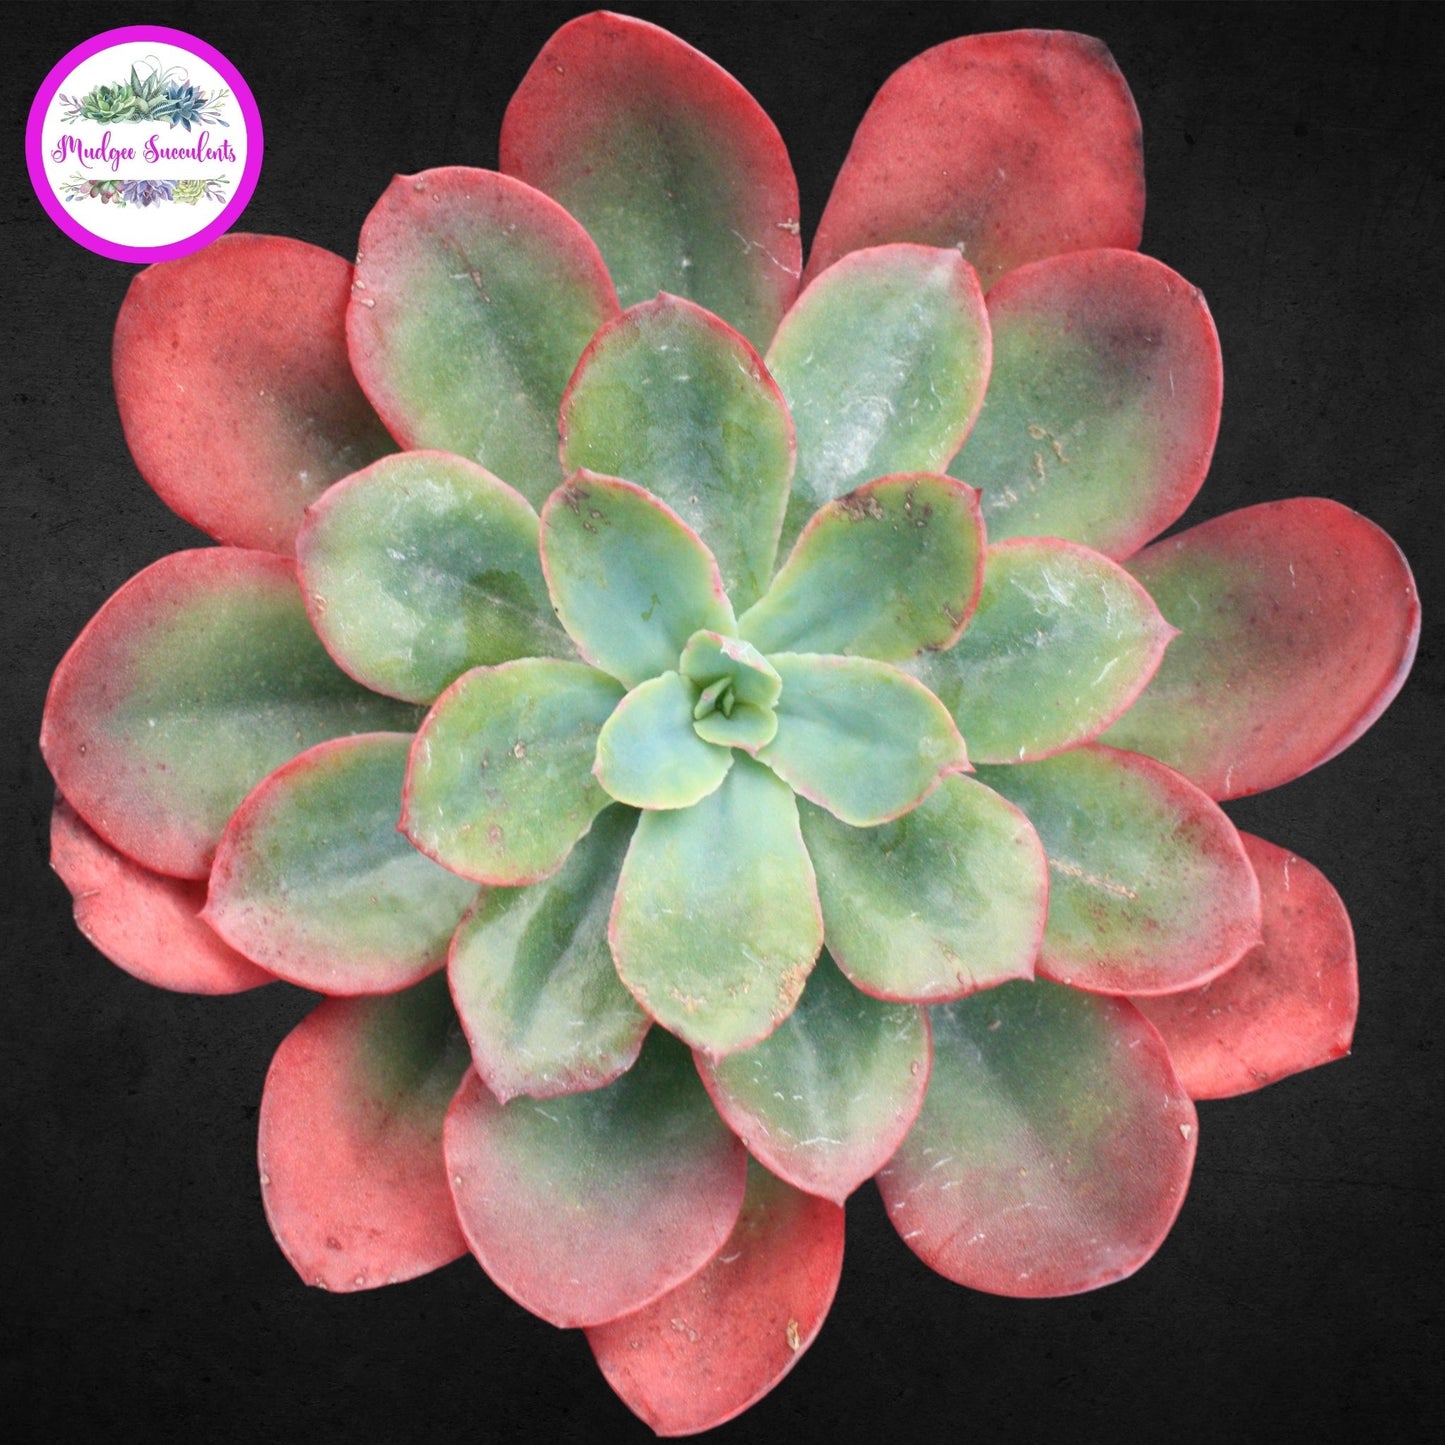 Succulent Plant - Echeveria 'Rainbow Sunset' - Mudgee Succulents Online Shop